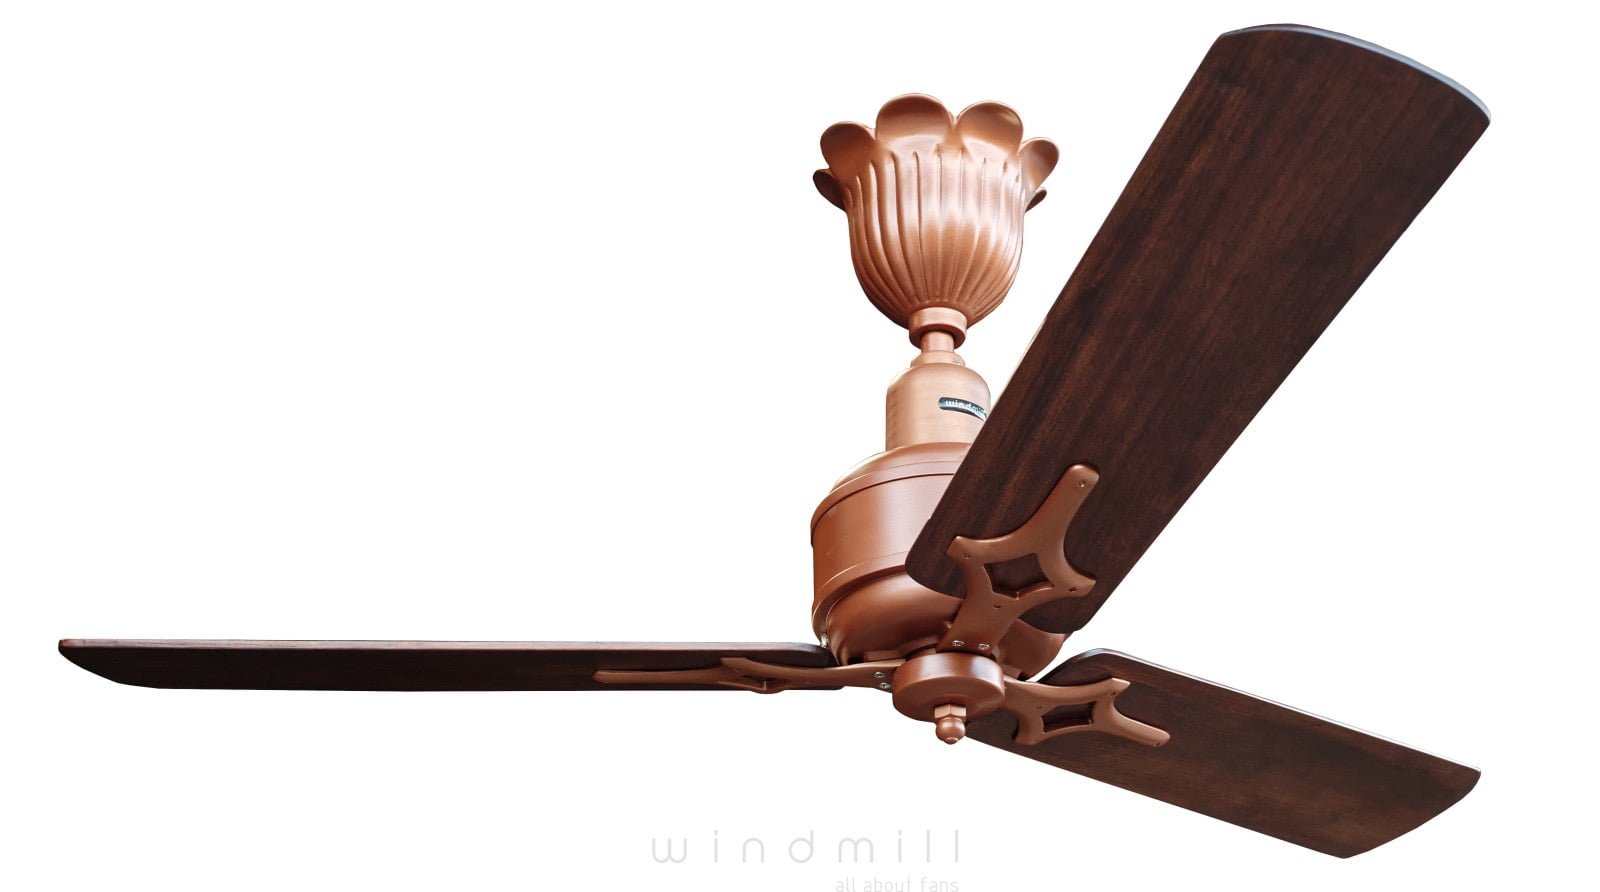 Ceiling Fan From Windmill Designer Fans